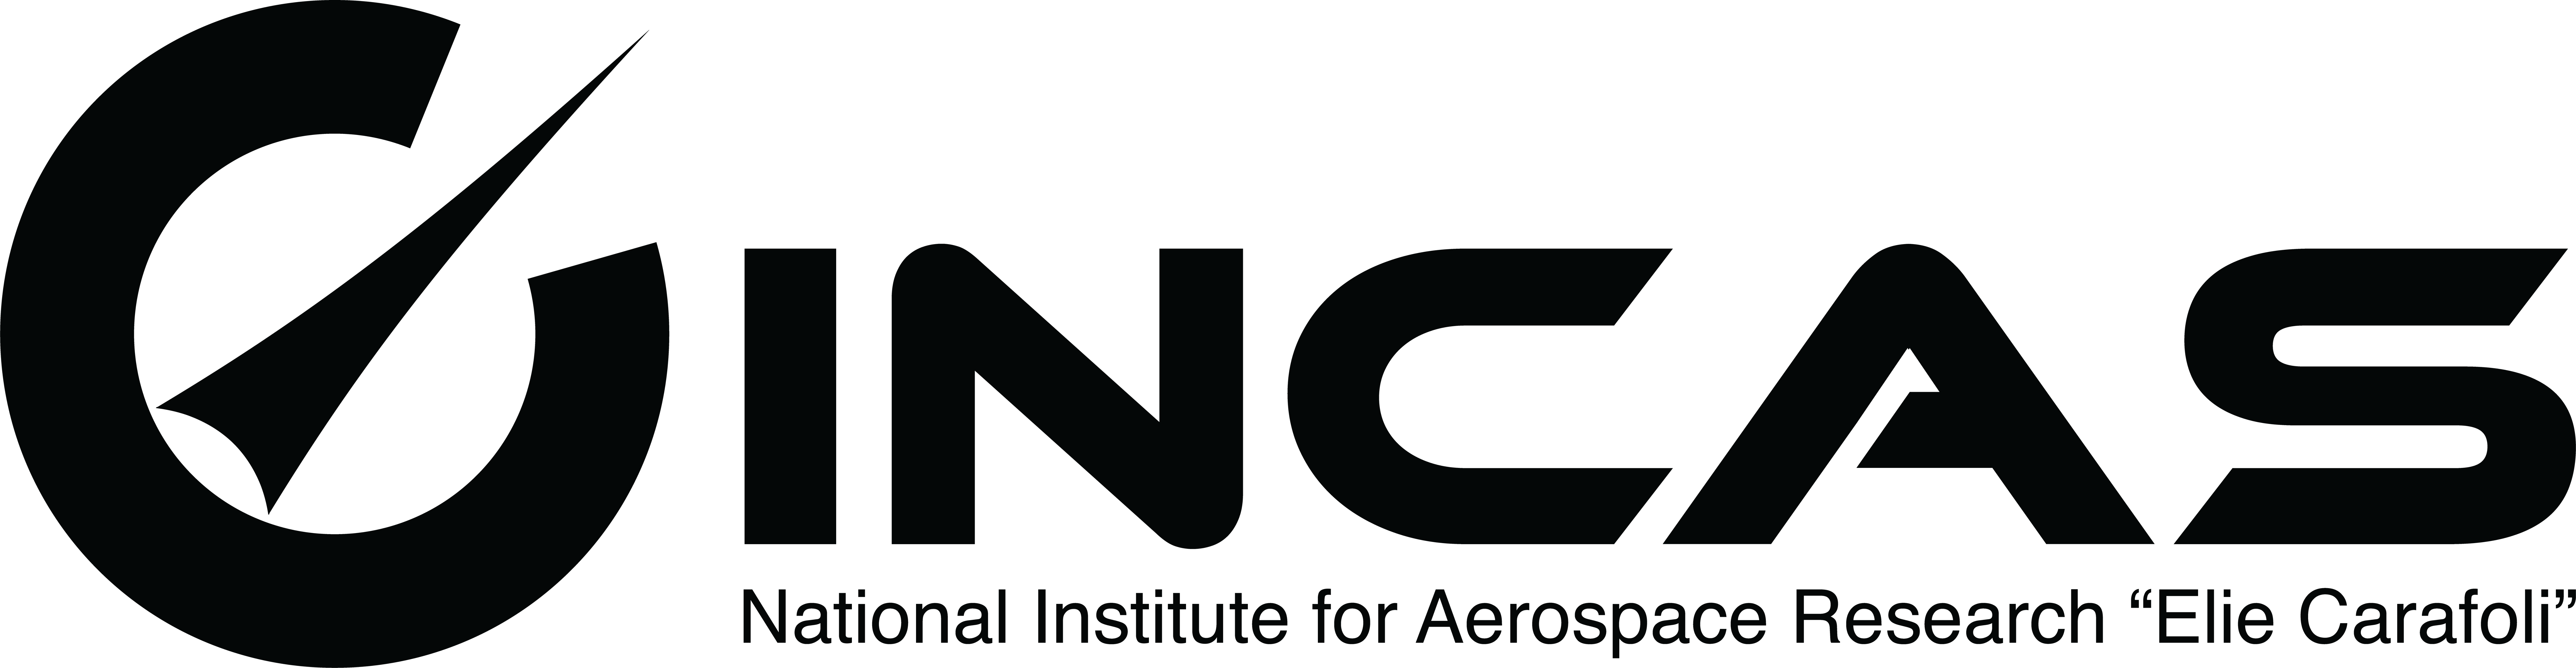 INCAS Logo